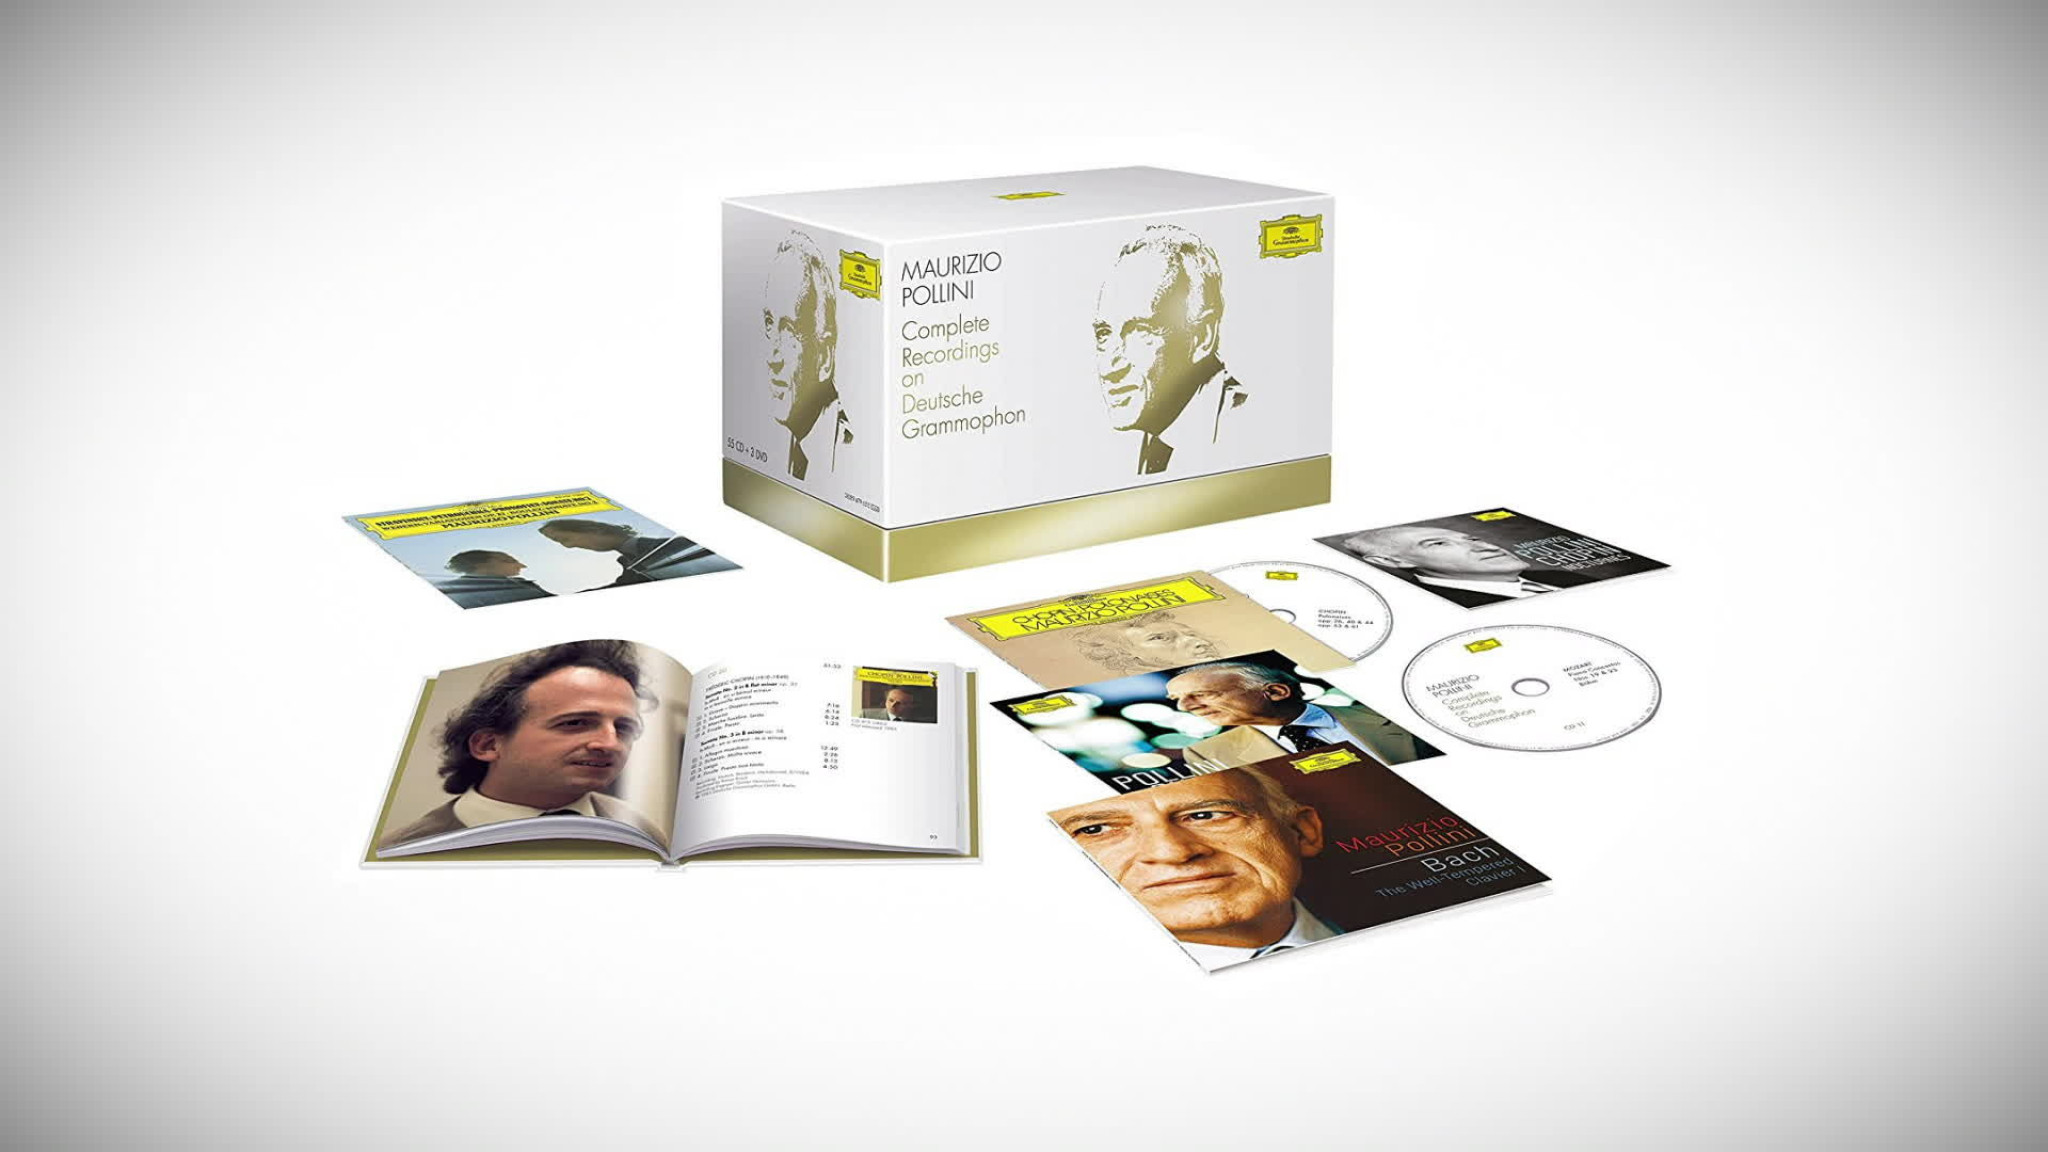 Complete Recordings on Deutsche Grammophon (Trailer)